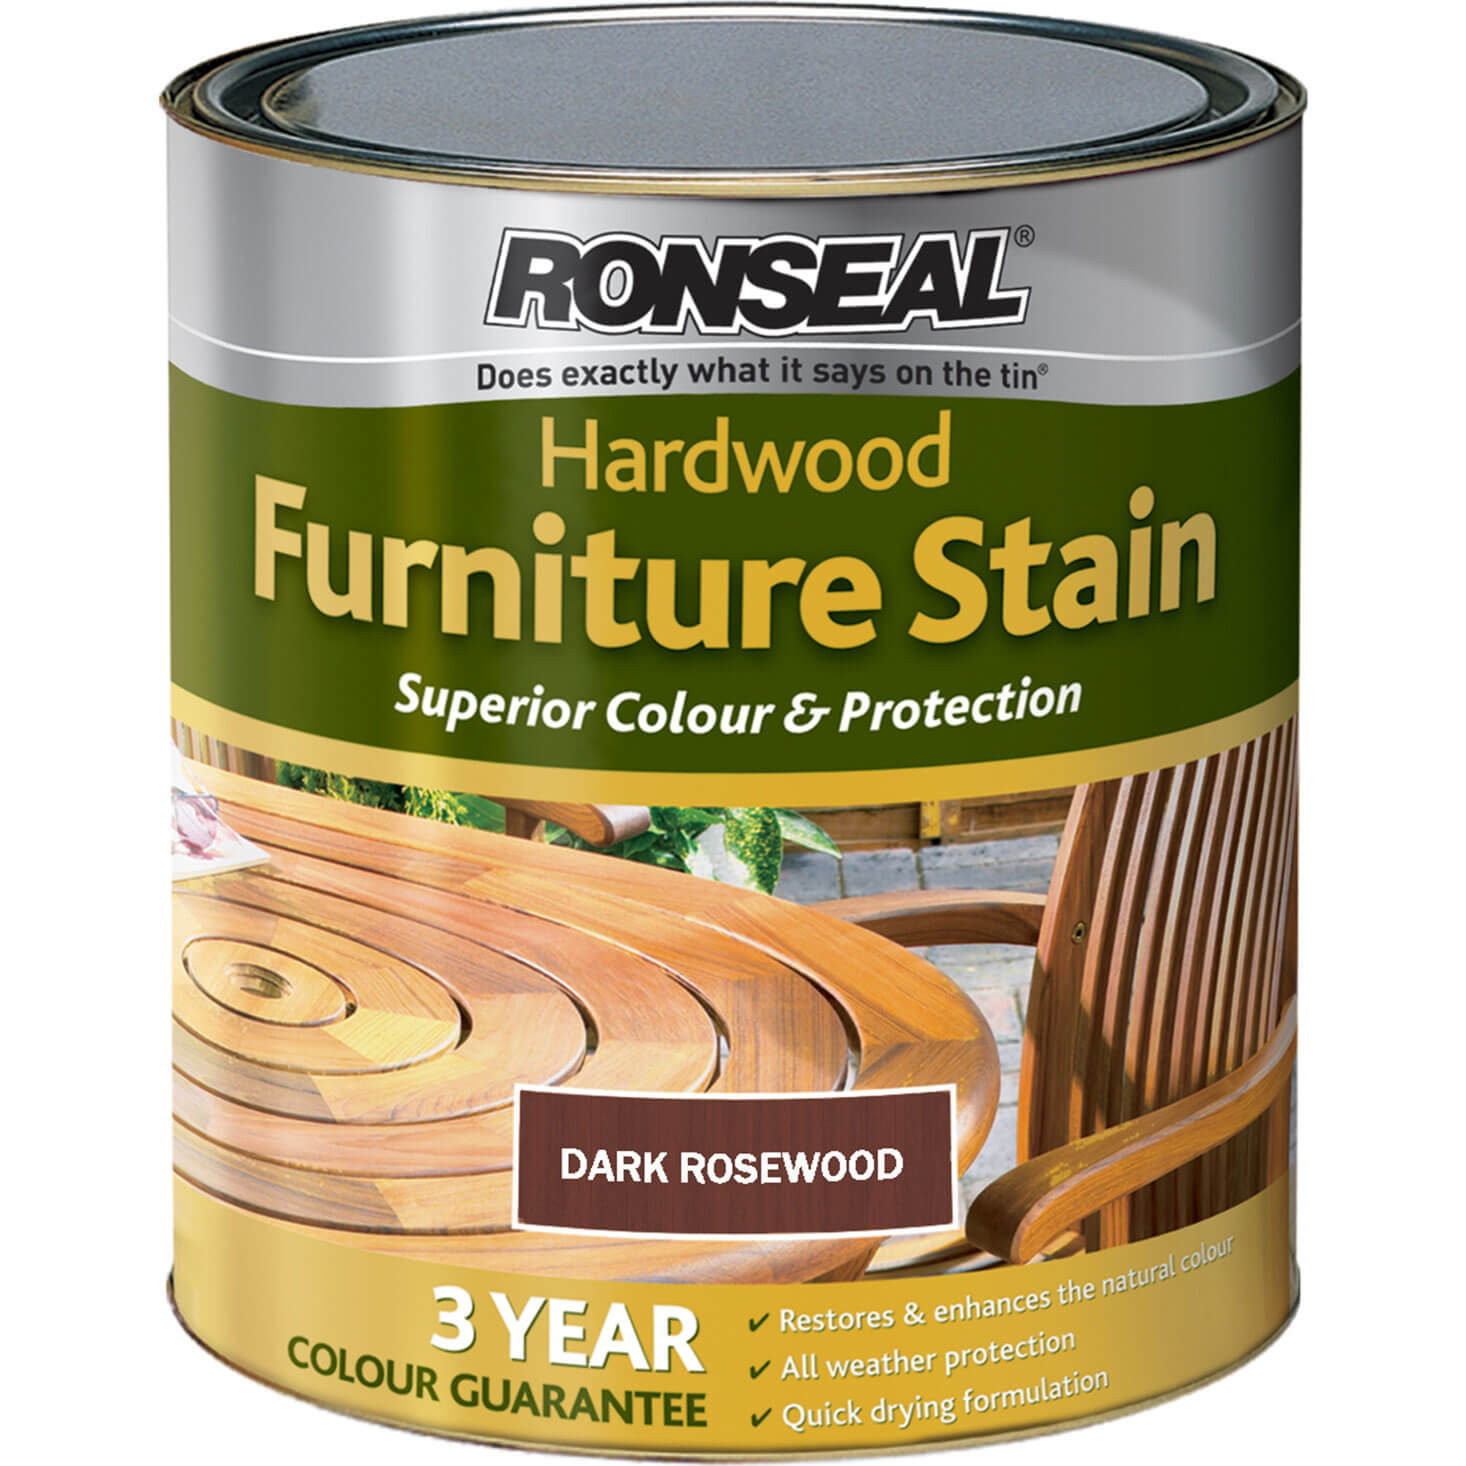 Image of Ronseal Hardwood Furniture Stain Rosewood 750ml